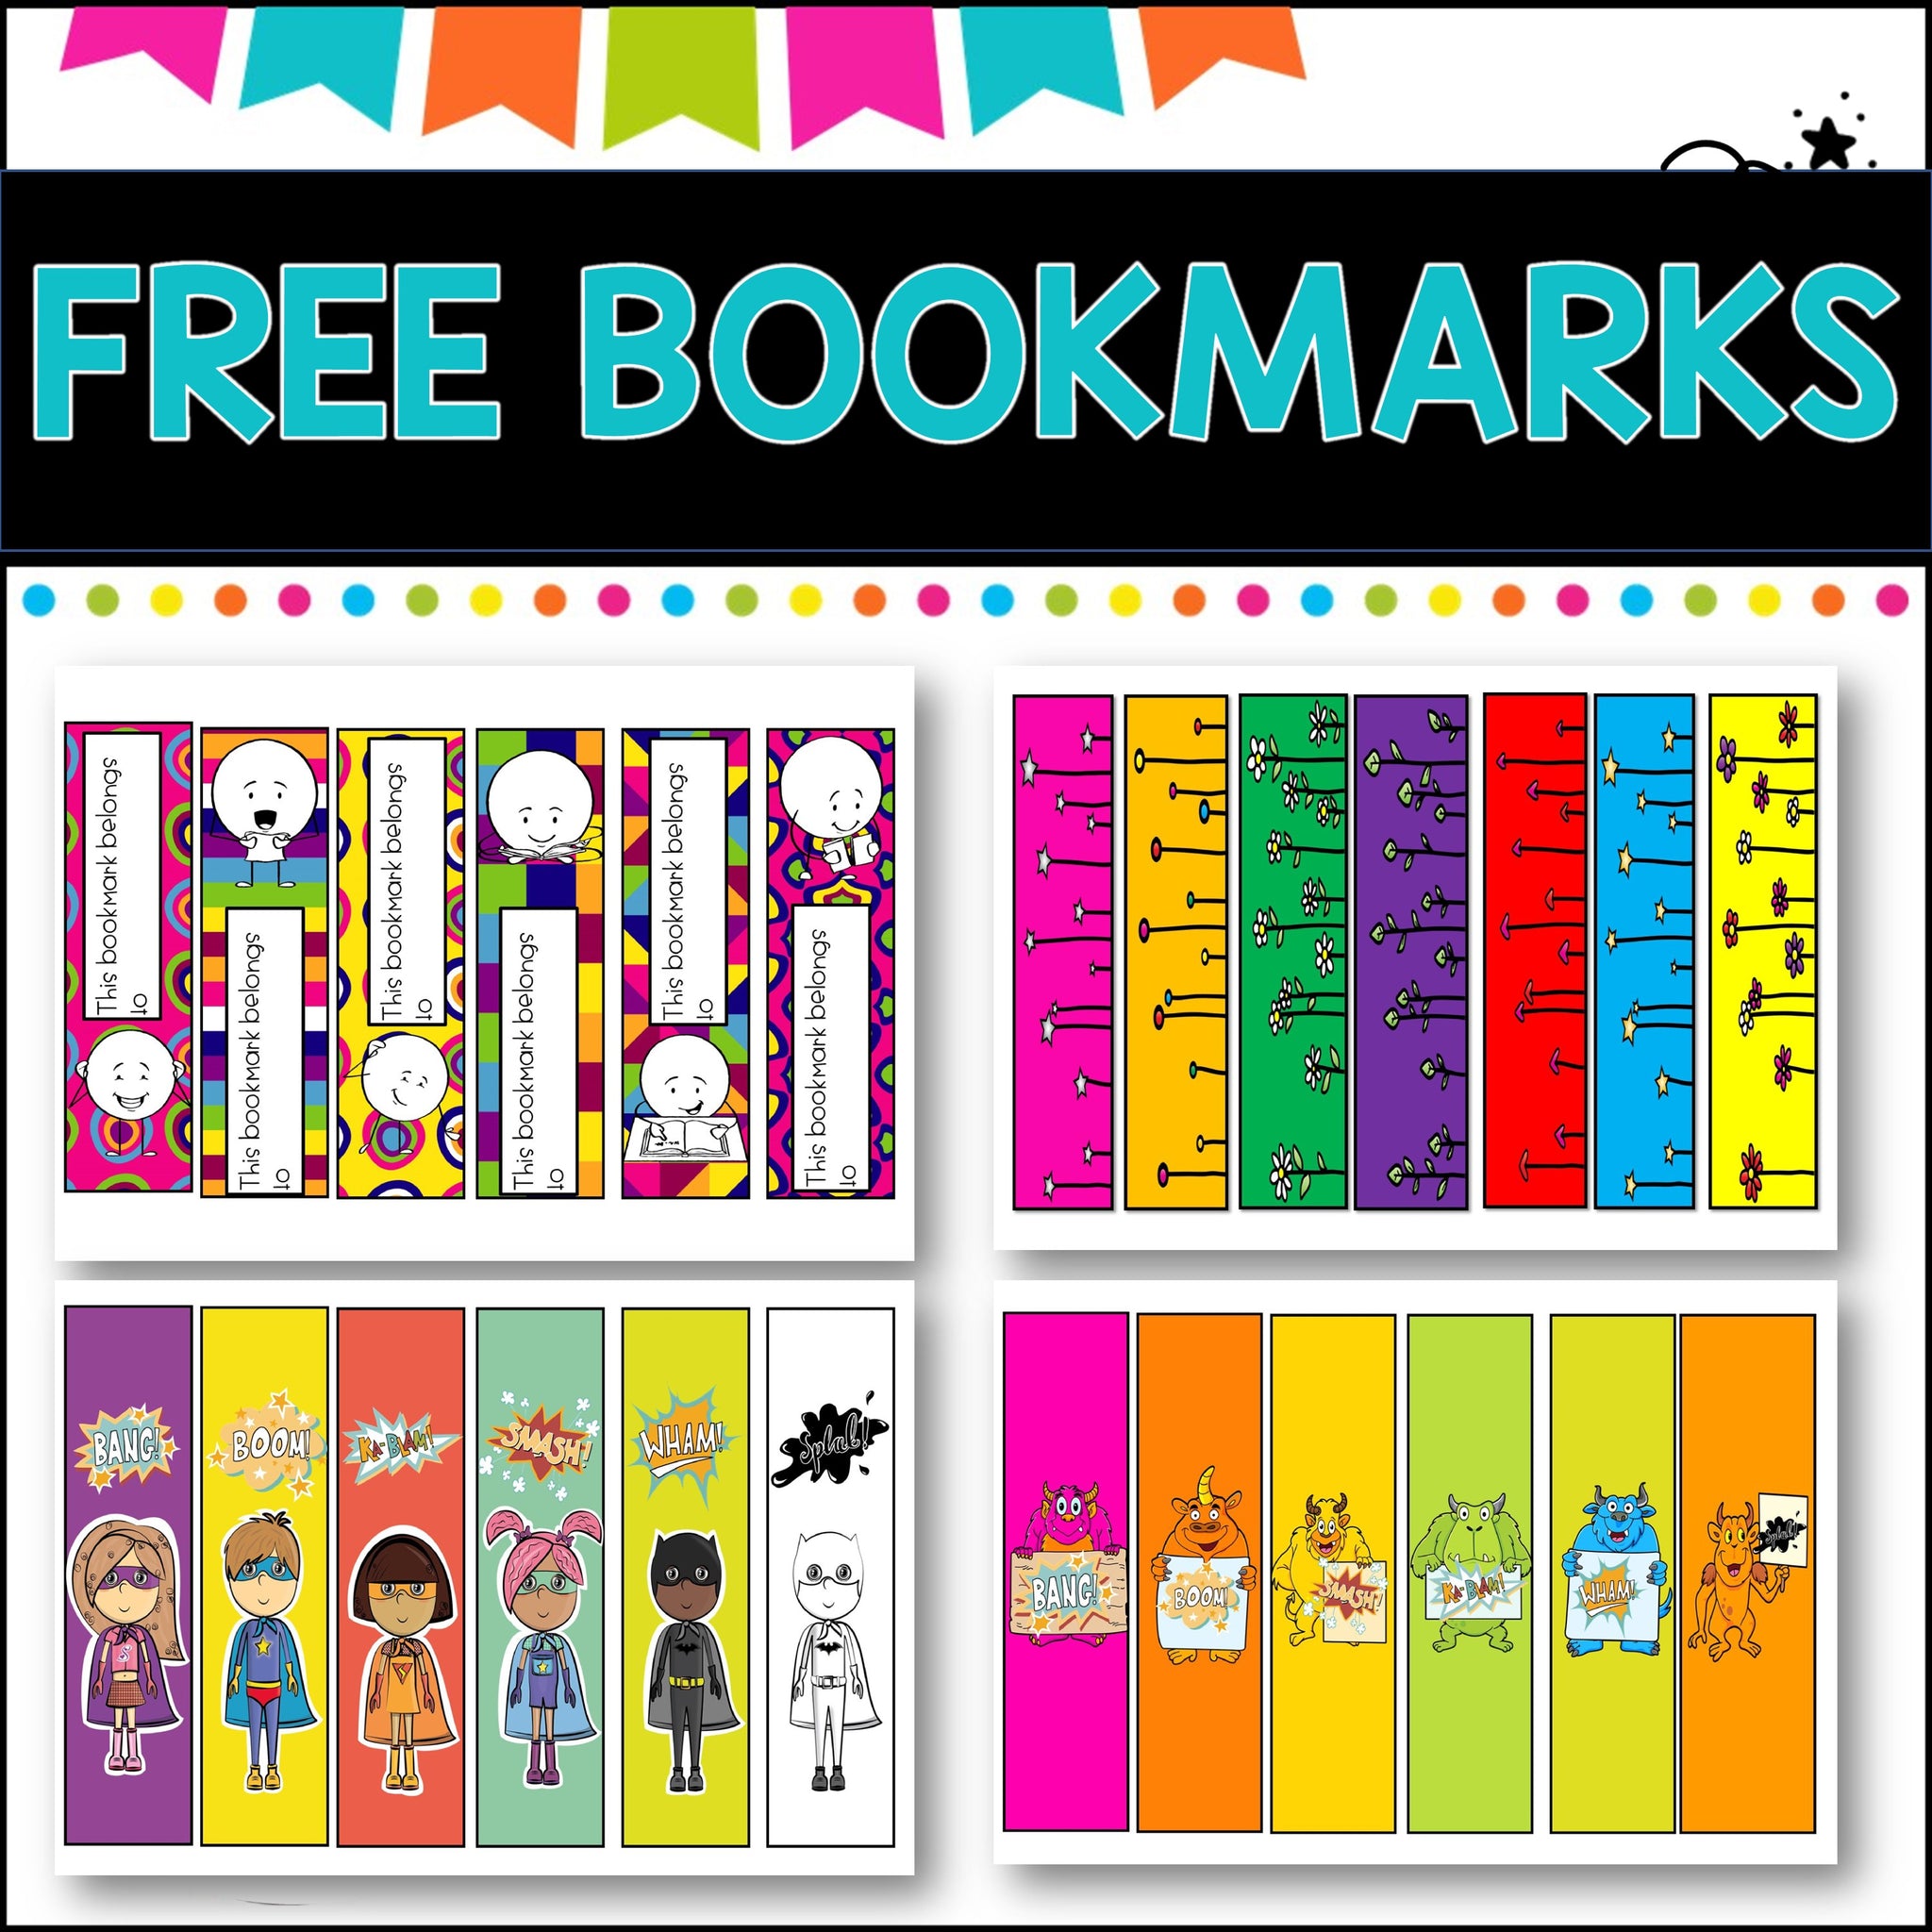 FREE fun, bookmarks